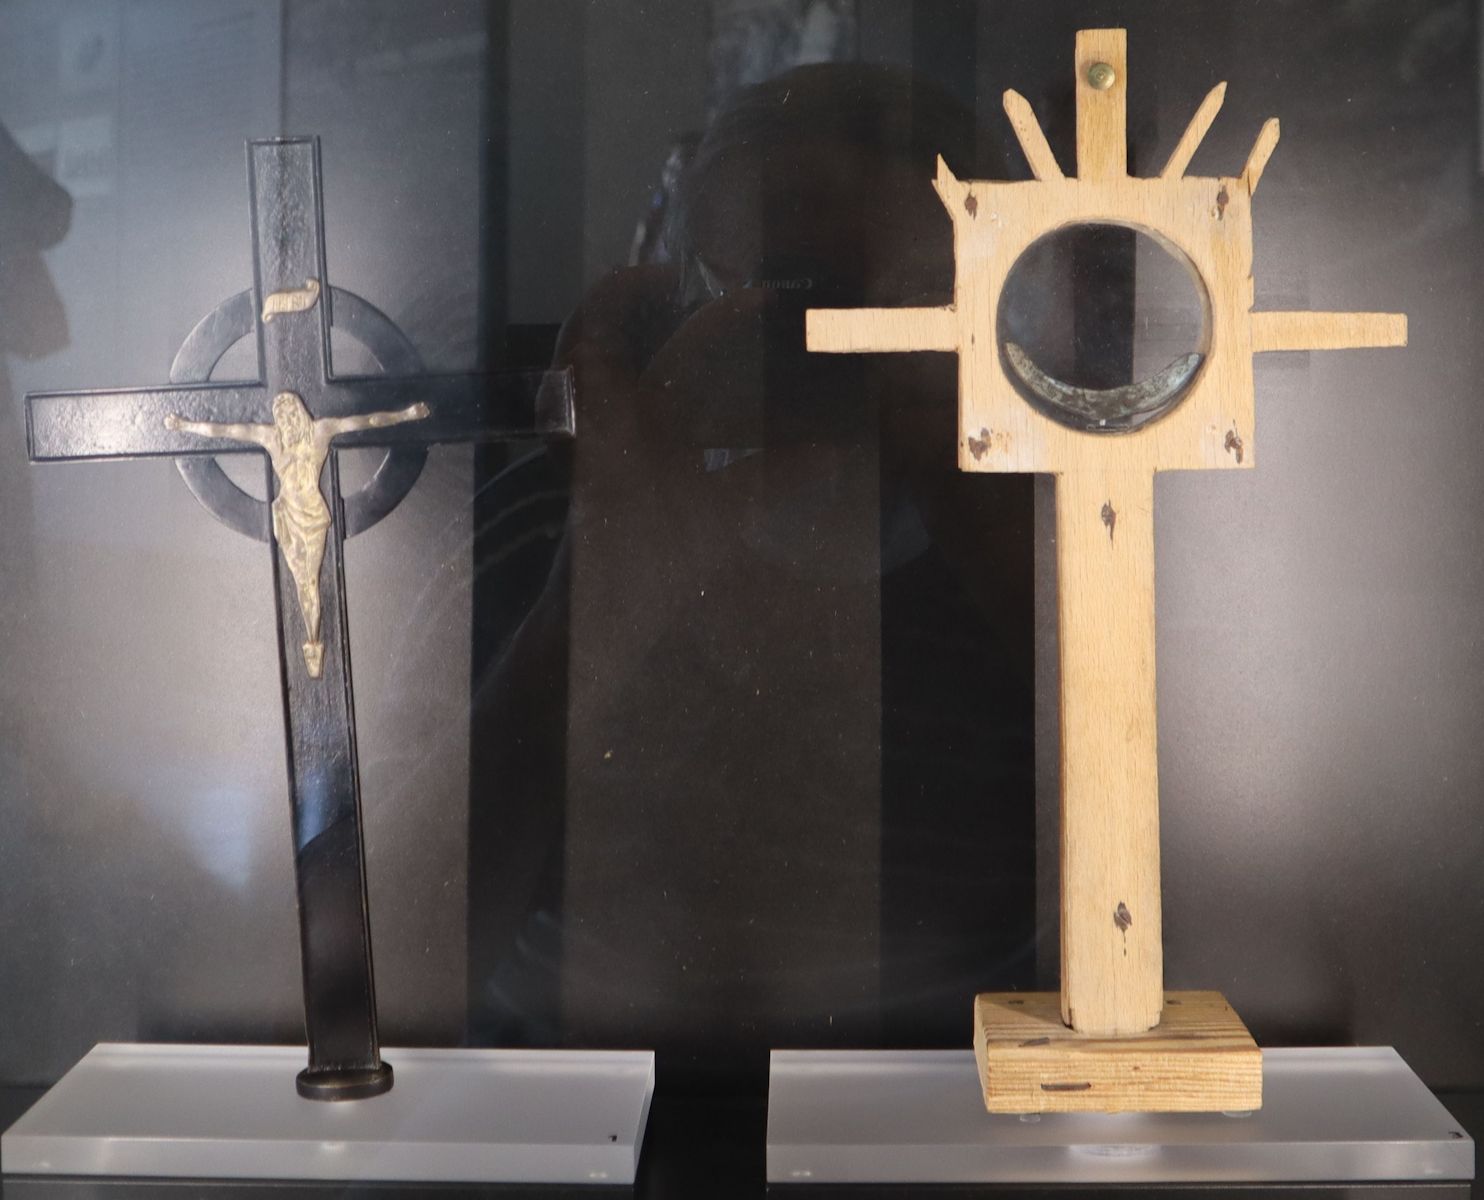 Kreuze, die von Priestern im Konzentrationslager in Dachau verwendet wurden, in der Ausstellung in der Gedenkstätte